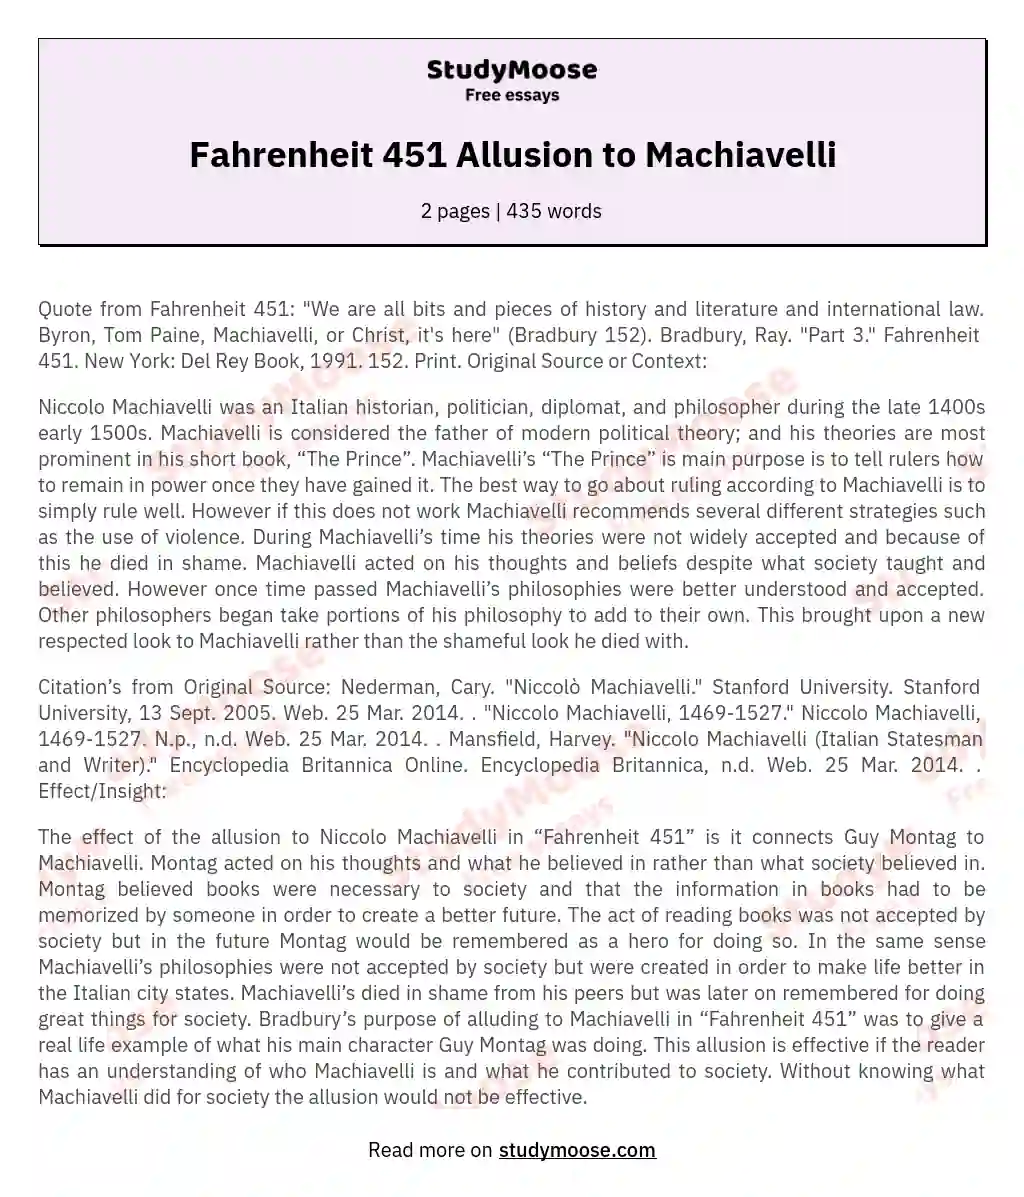 Fahrenheit 451 Allusion to Machiavelli